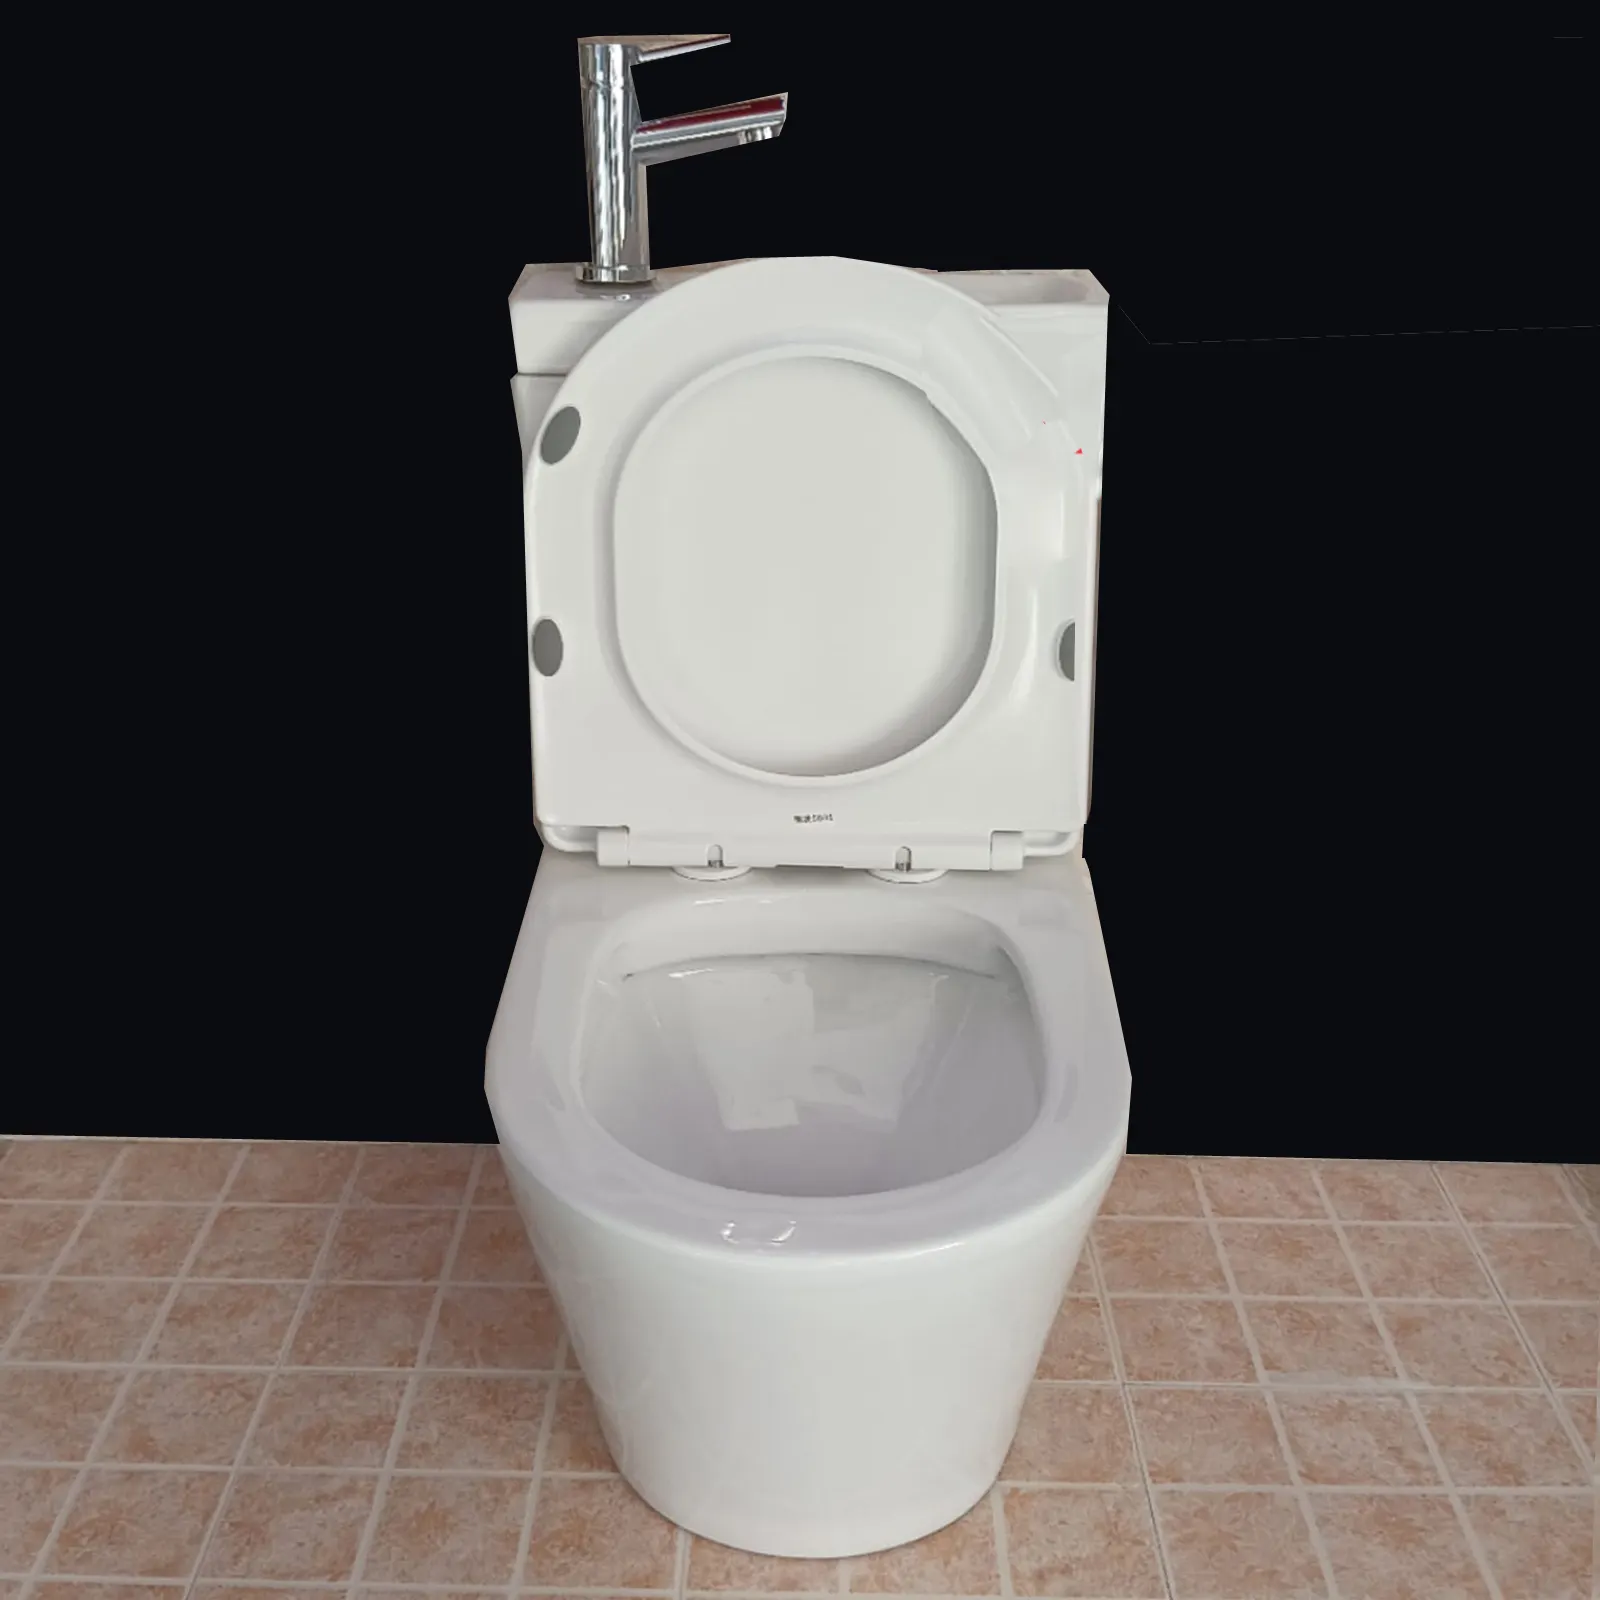 Bassin dans wc combiné double chasse réservoir lave toilette principale intelligent citerne couplé placard lavage des mains bassin positif s toilette